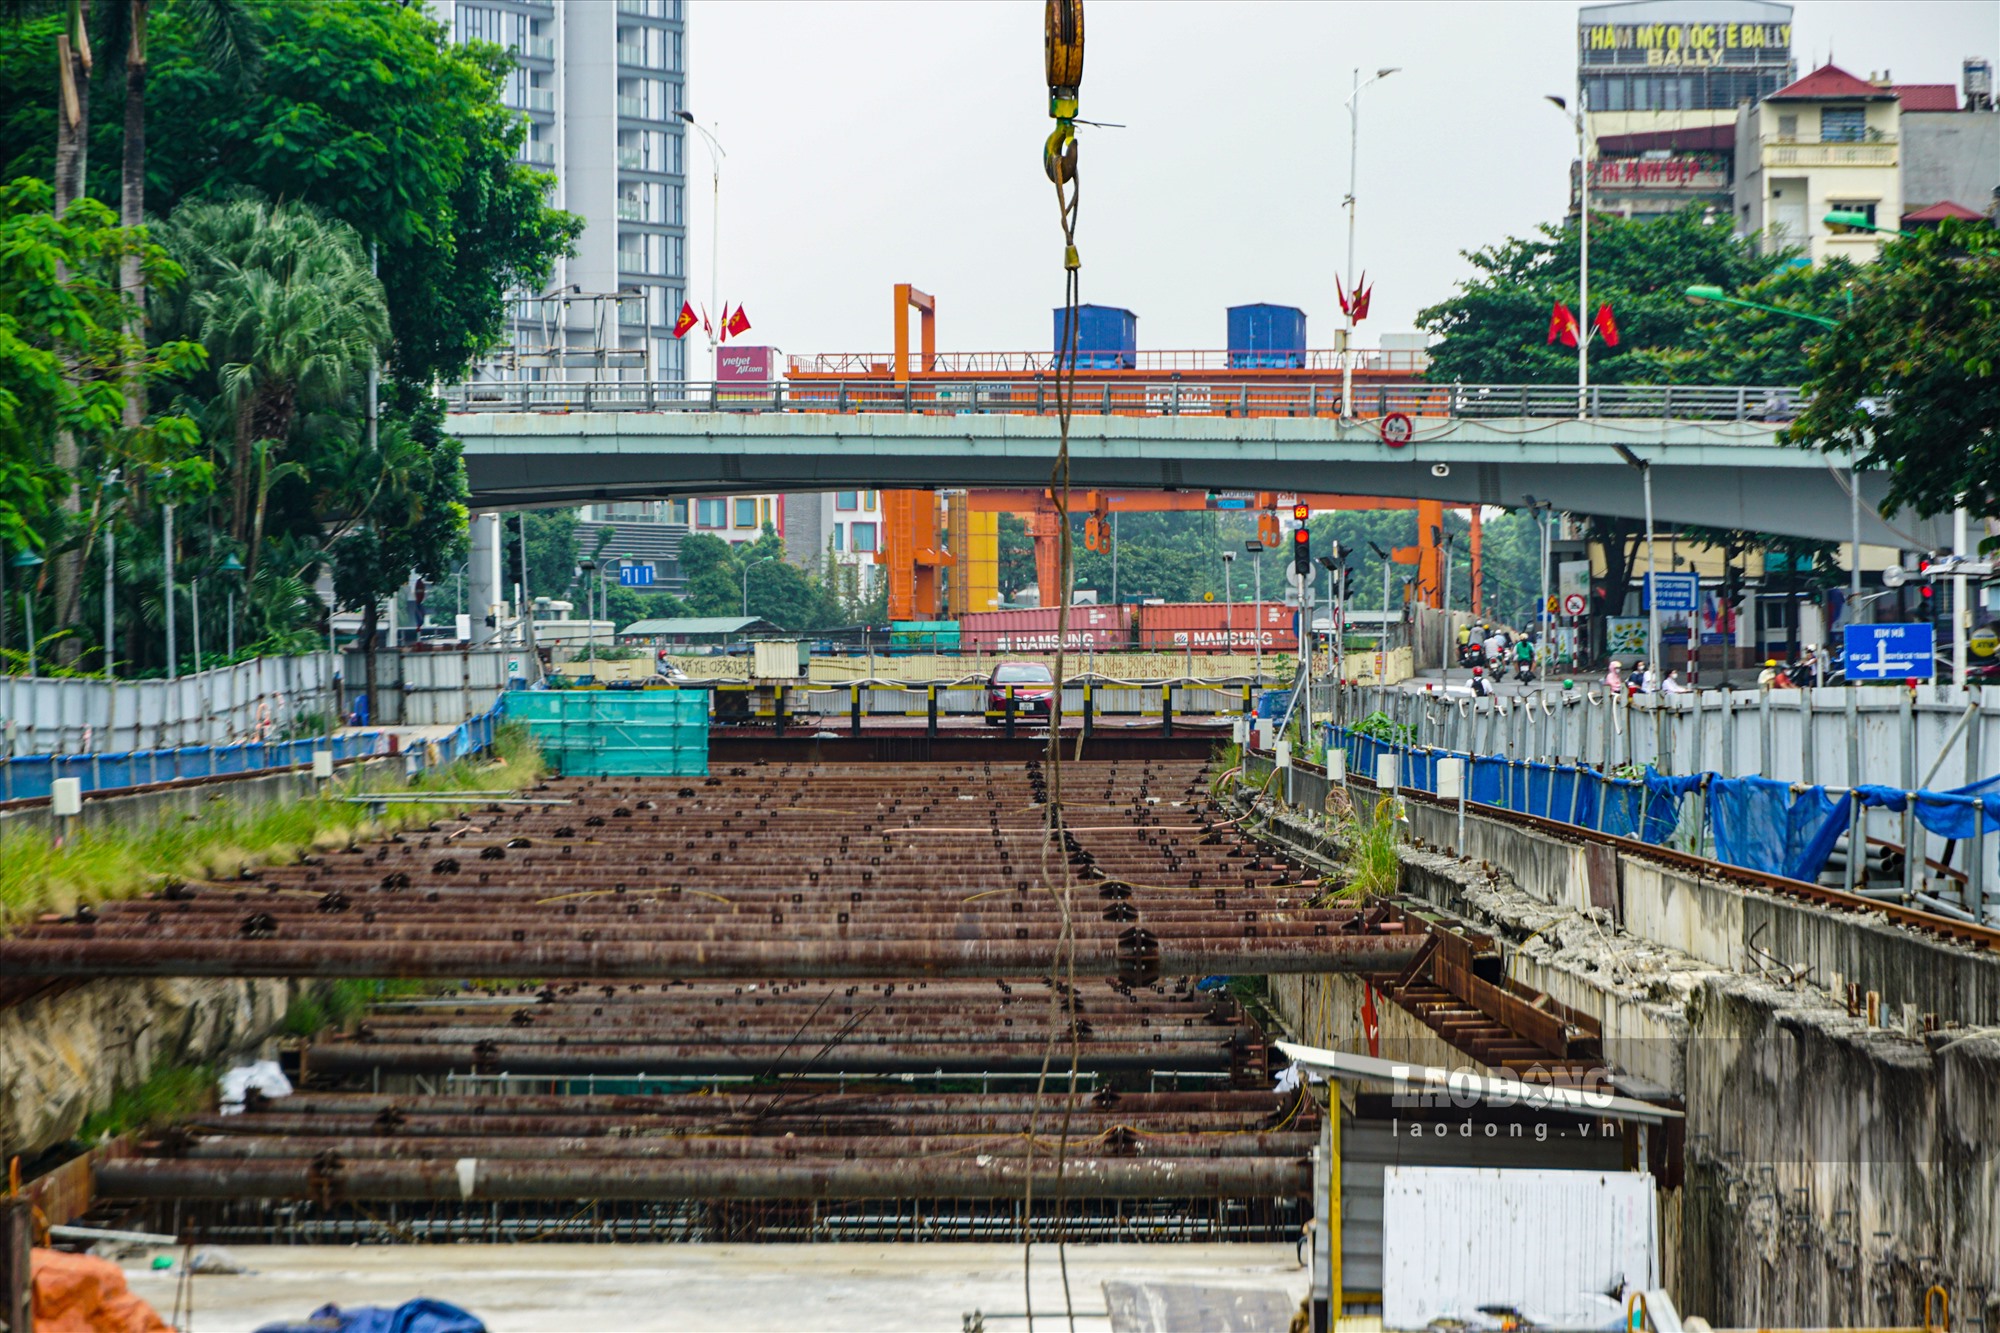 Theo Ban Quản lý đường sắt đô thị Hà Nội, hiện tiến độ tổng thể dự án Metro Nhổn - ga Hà Nội đạt khoảng 77,64%, trong đó tiến độ thi công đoạn trên cao đạt 99,7% và đang tiến hành chạy thử tàu.